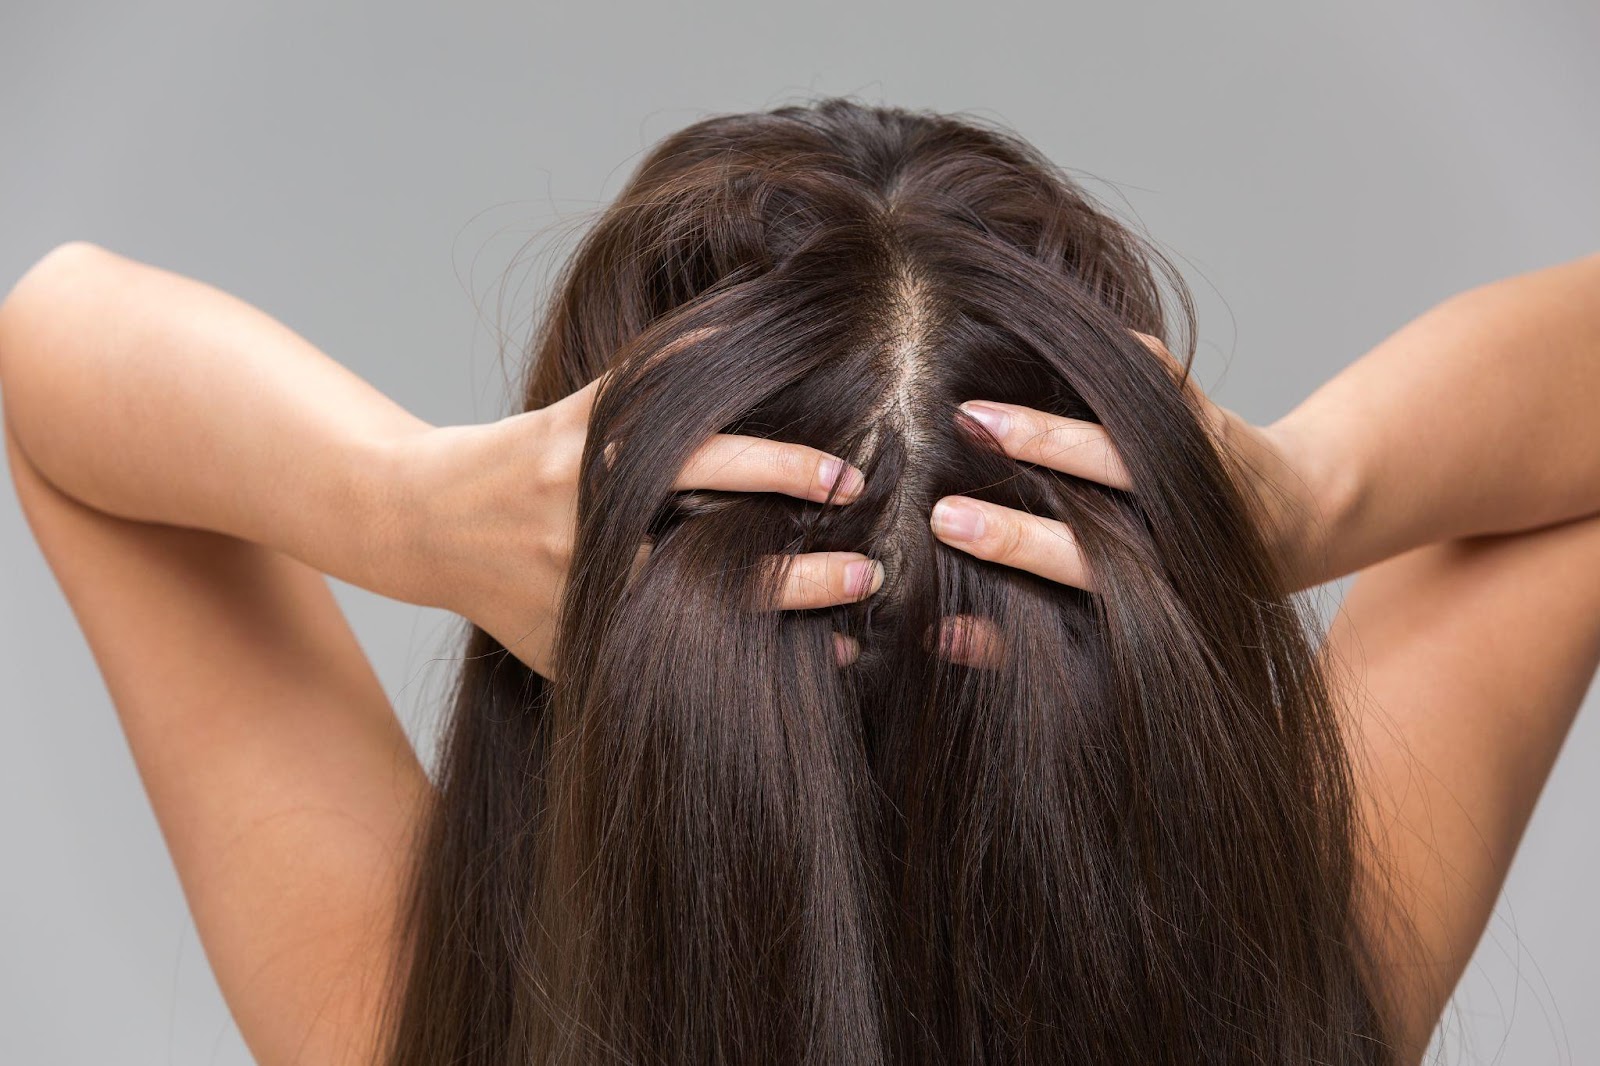 Массаж головы пальцами может усилить густоту волос.